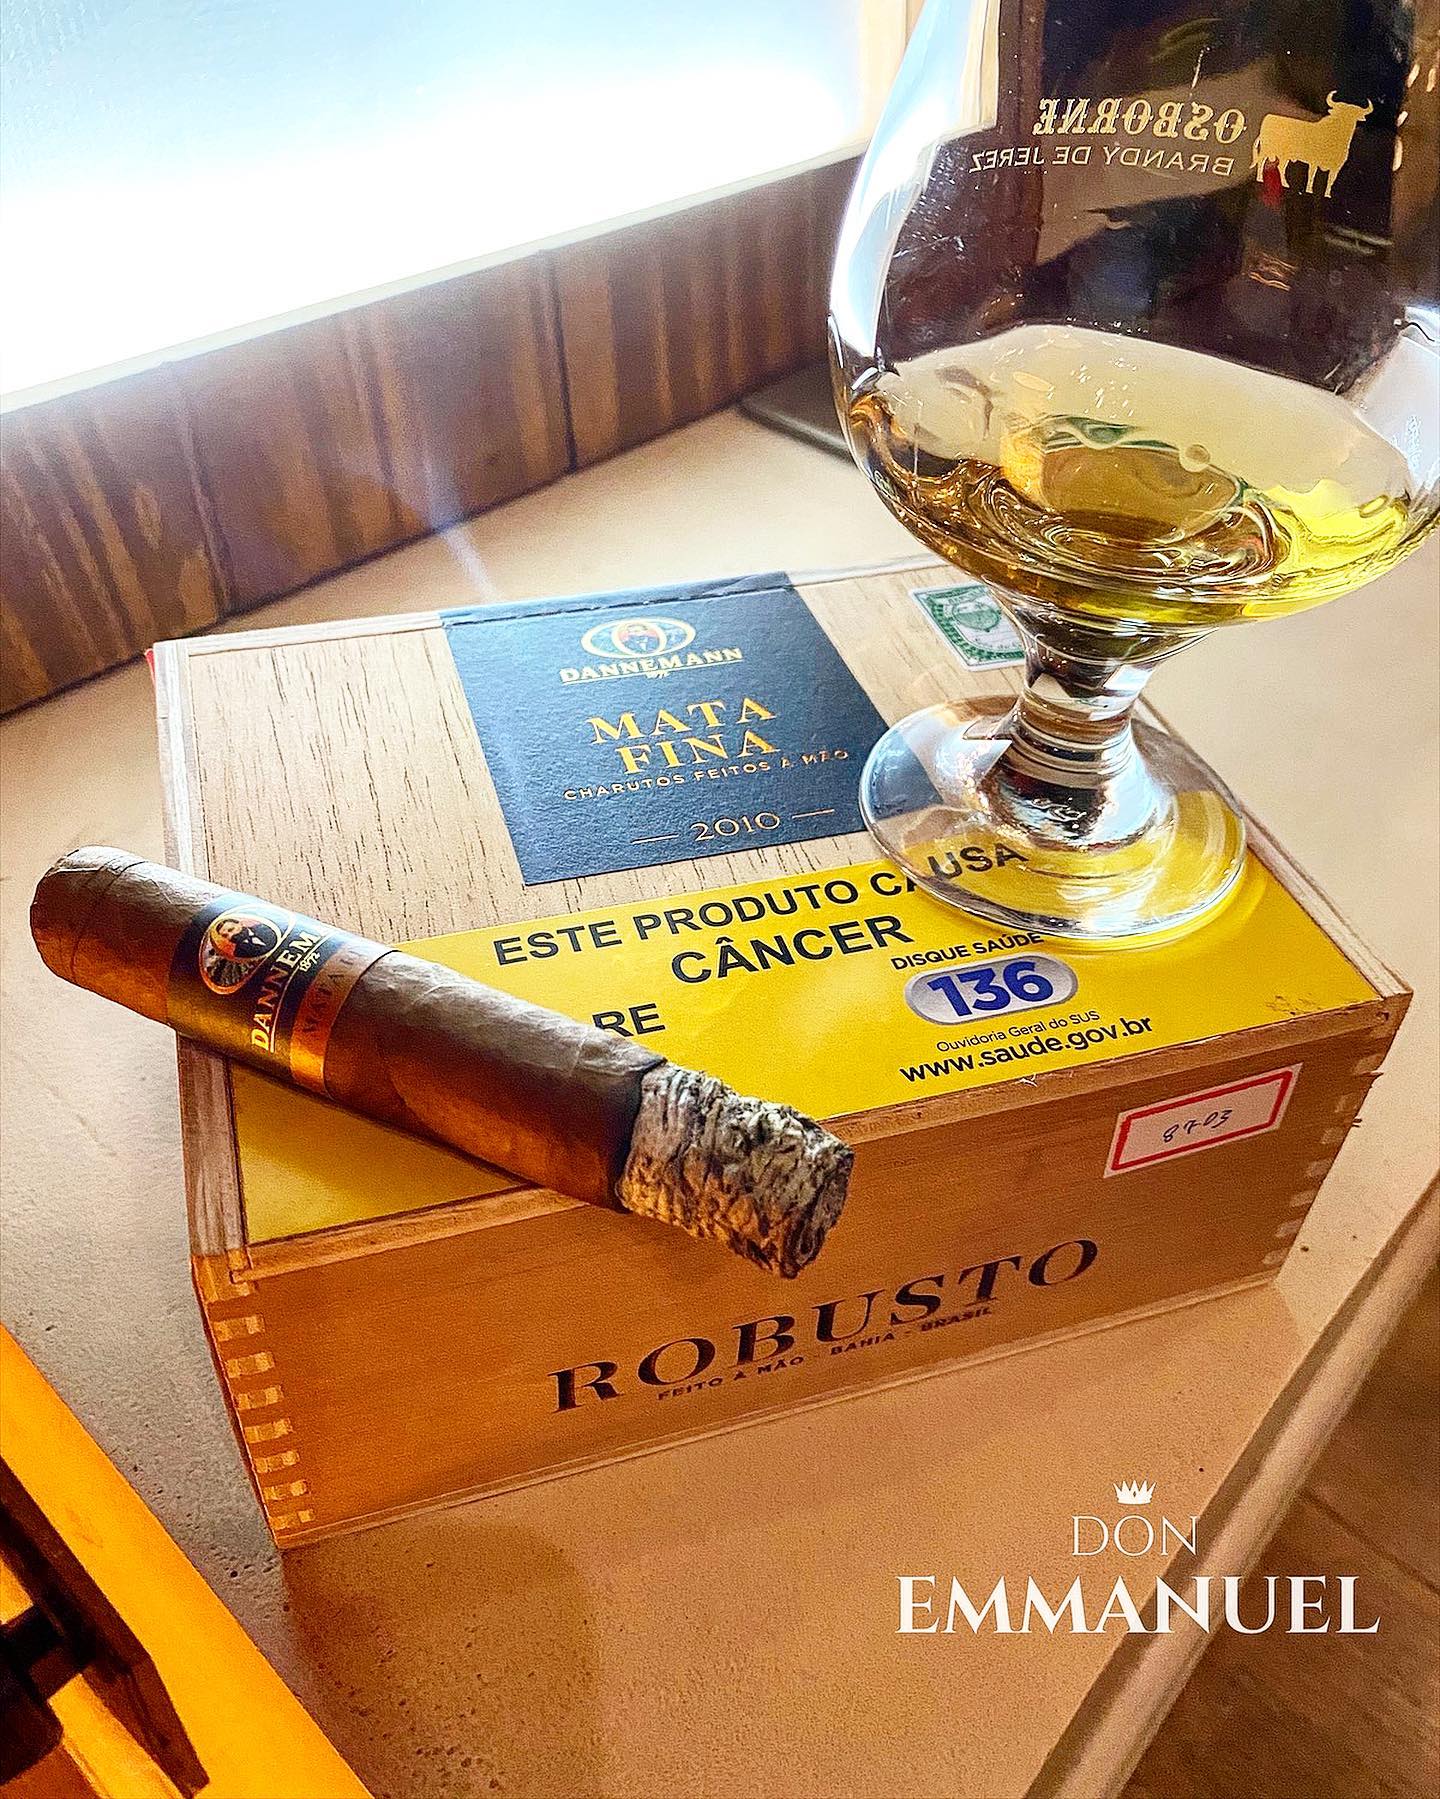 Finalizando mais uma turma de International Cigar Sommelier com um dos melhores charutos brasileiros : Dannemann